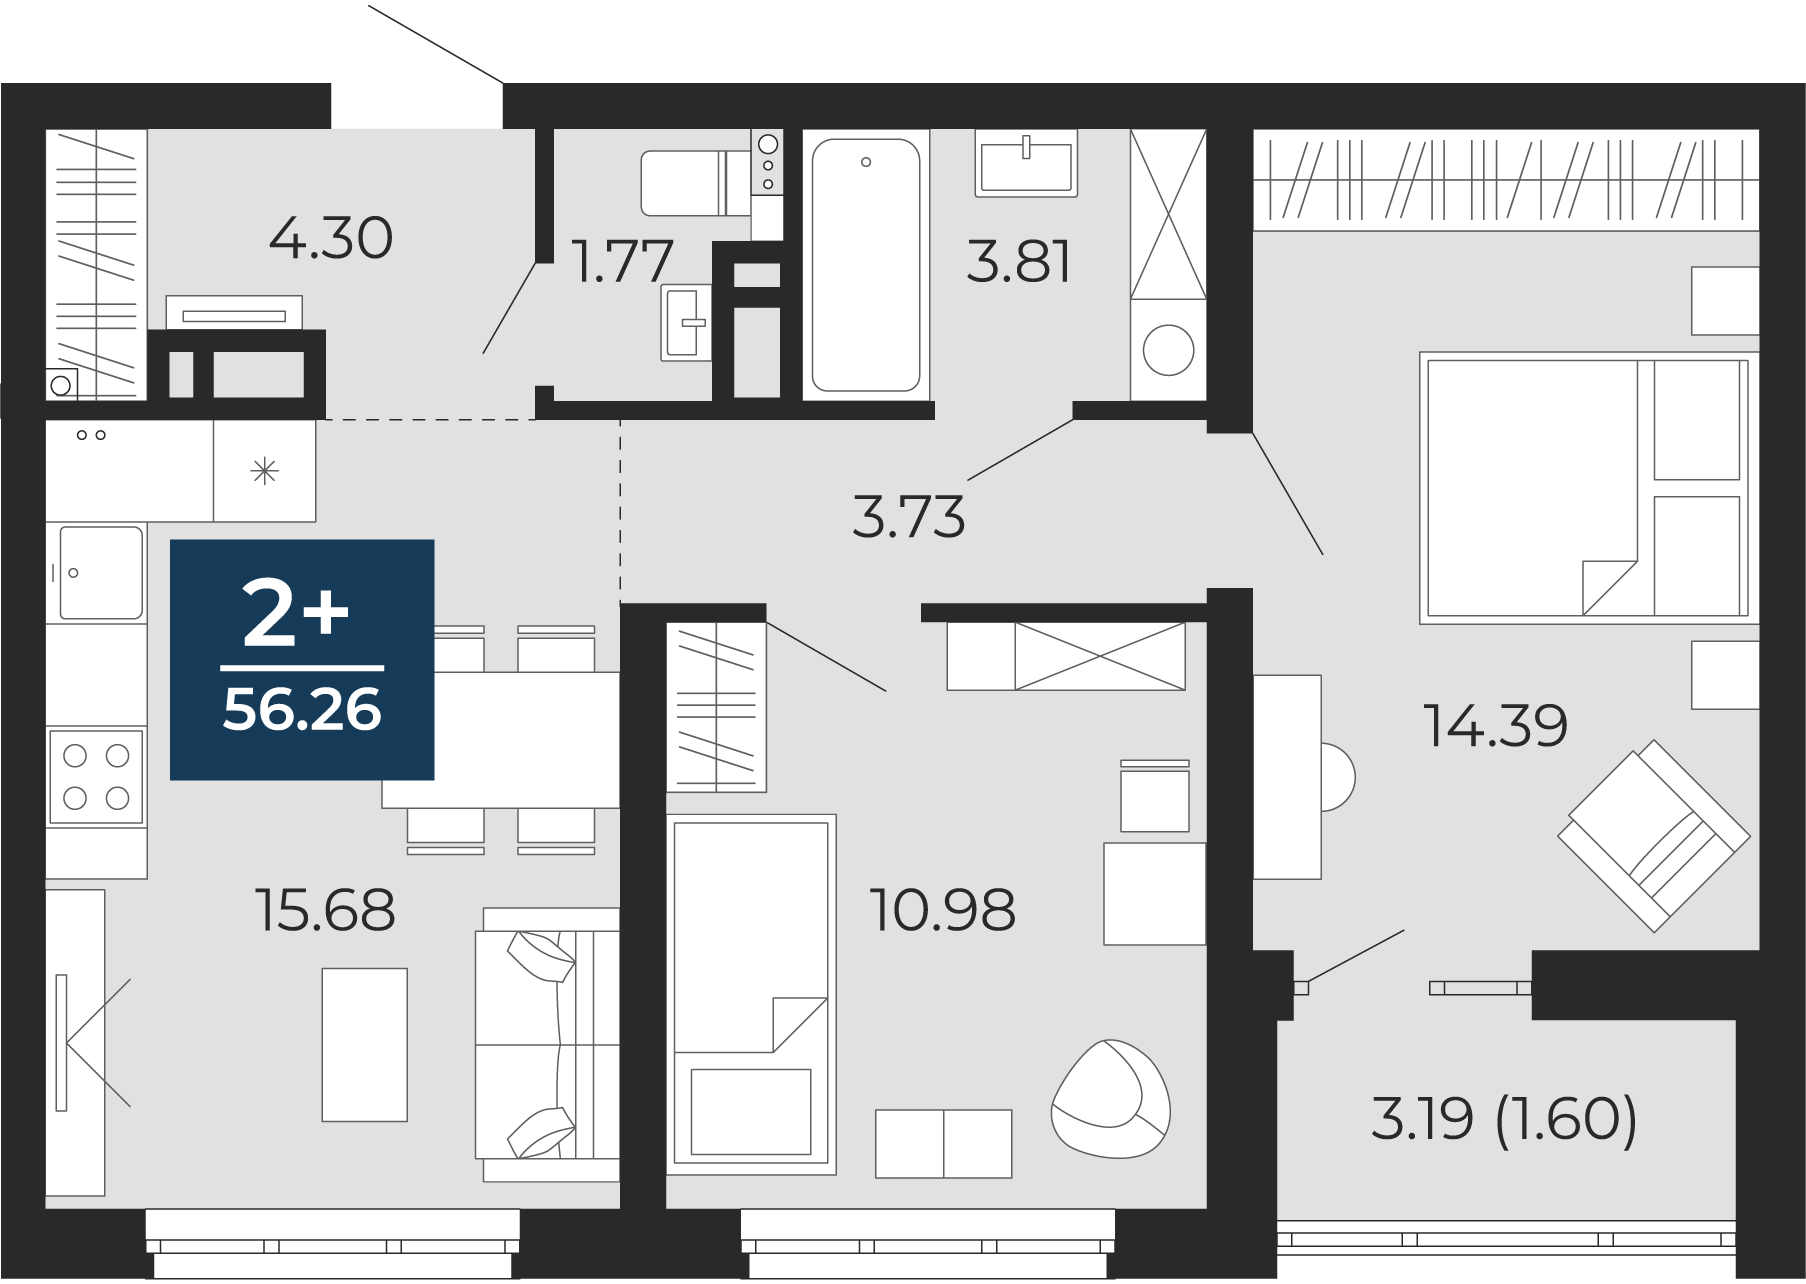 Квартира № 62, 2-комнатная, 56.26 кв. м, 9 этаж